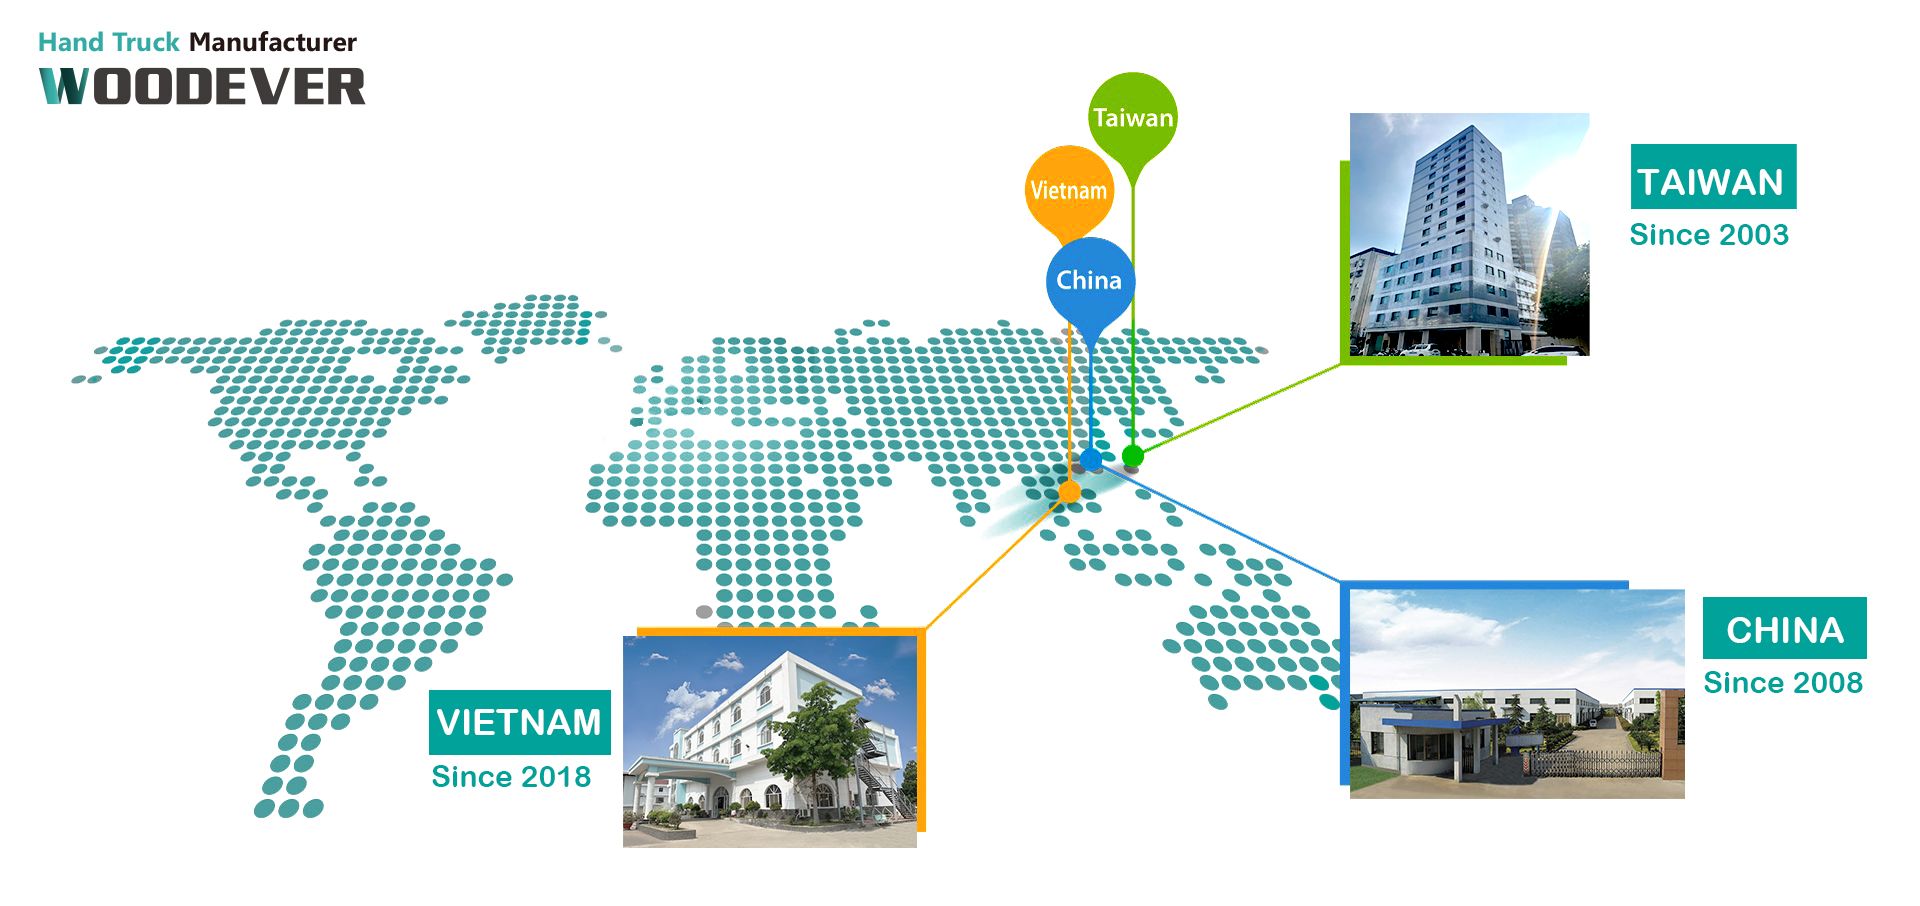 WOODEVER hat seinen Hauptsitz in Taichung, Taiwan, und 2 Produktionsstätten in China und Vietnam.